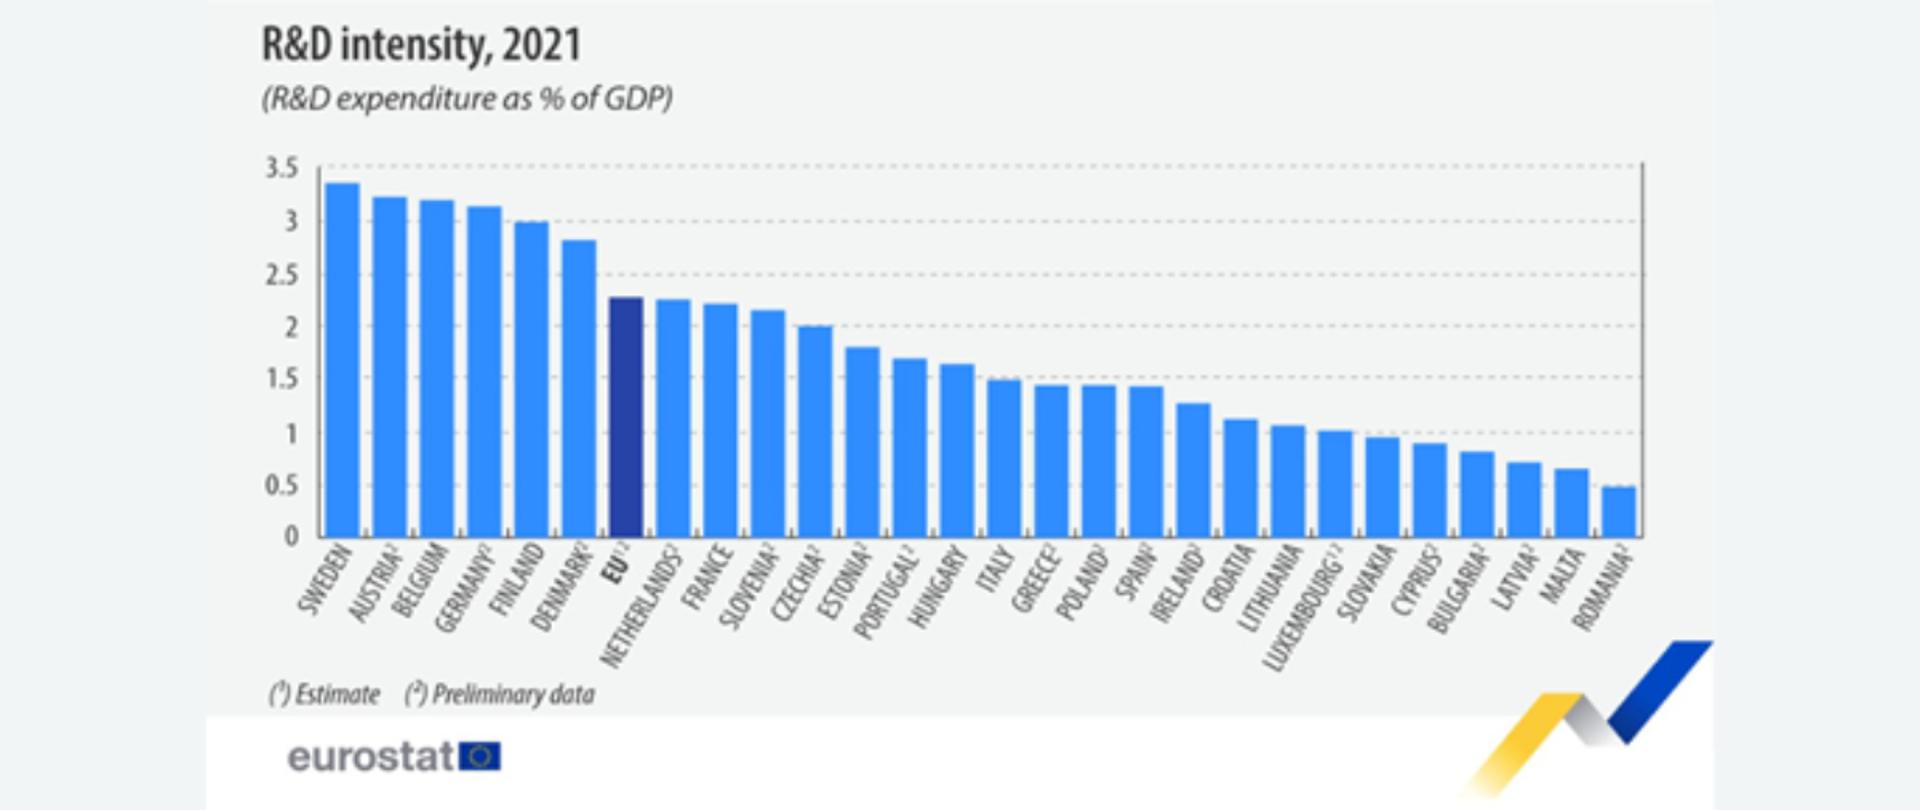 zdjęcie przedstawia wykres łupkowy obrazujący procentowe nakłady na badania i rozwój w poszczególnych państwach Unii Europejskiej w stosunku do ich PKB